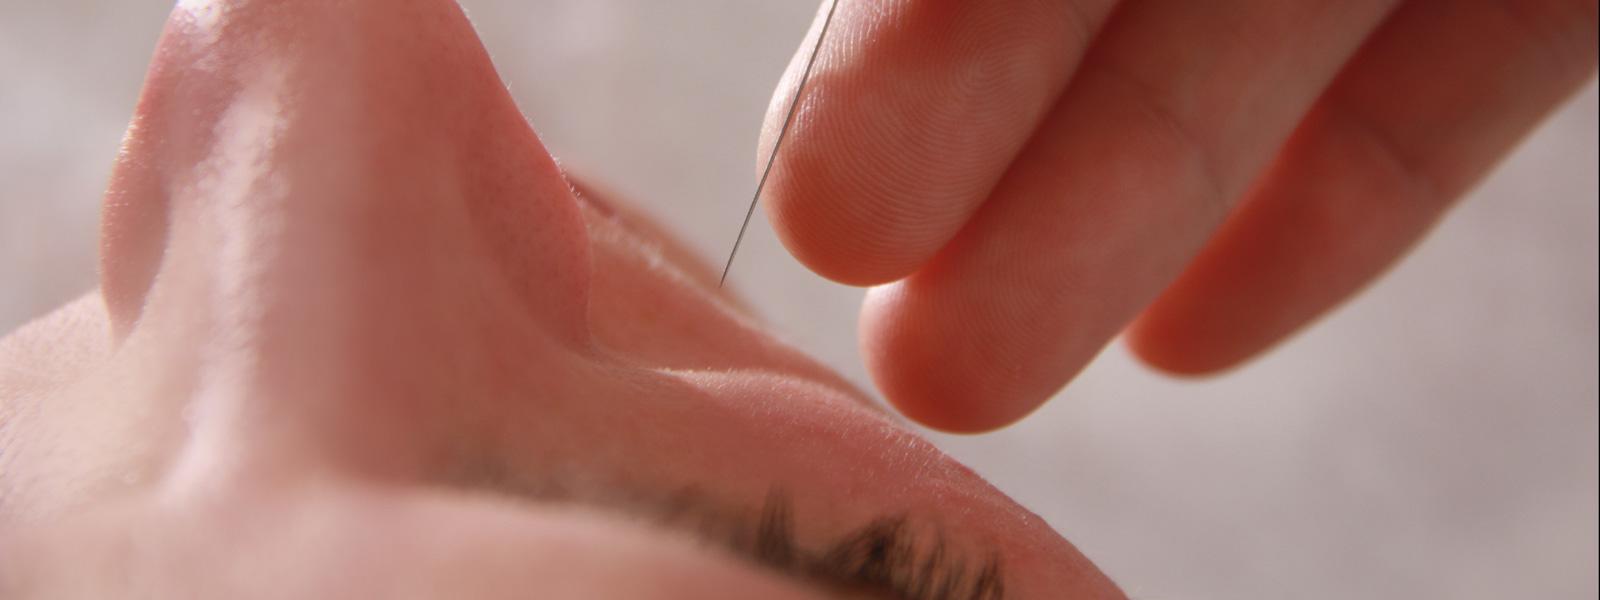 Setzen der Akupunktur-Nadel